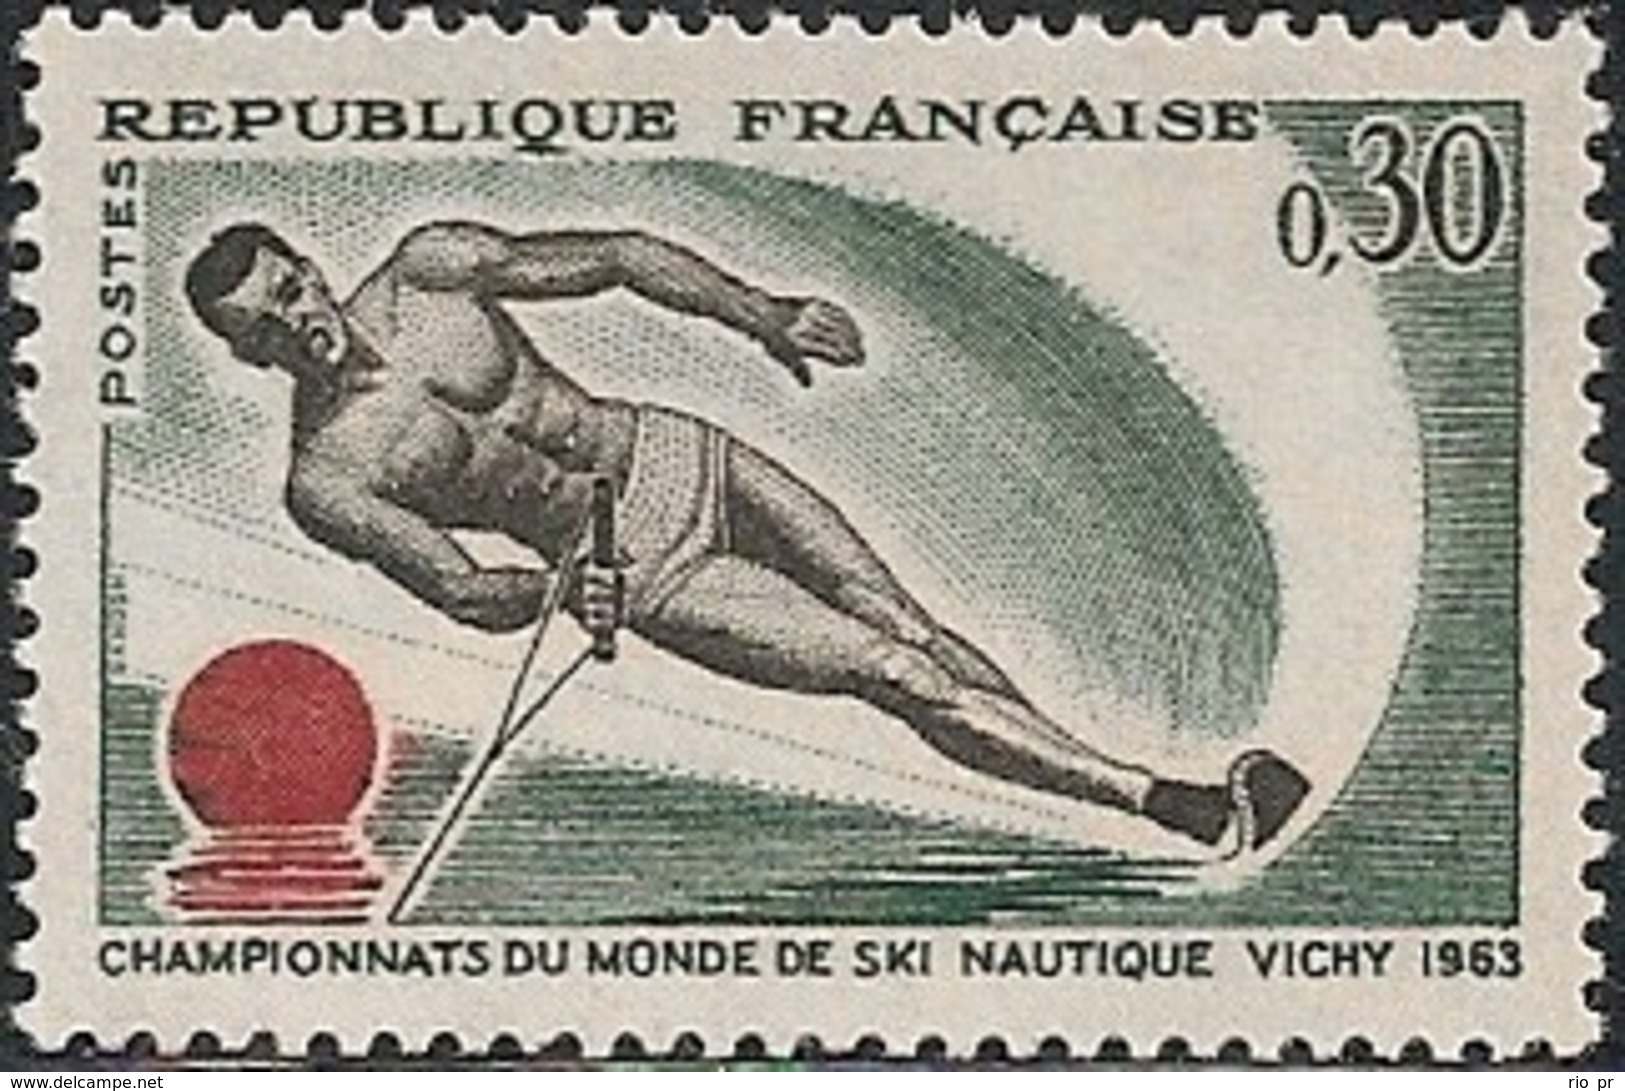 FRANCE - WORLD WATER-SKIING CHAMPIONSHIPS, VICHY 1963 - MNH - Wasserski